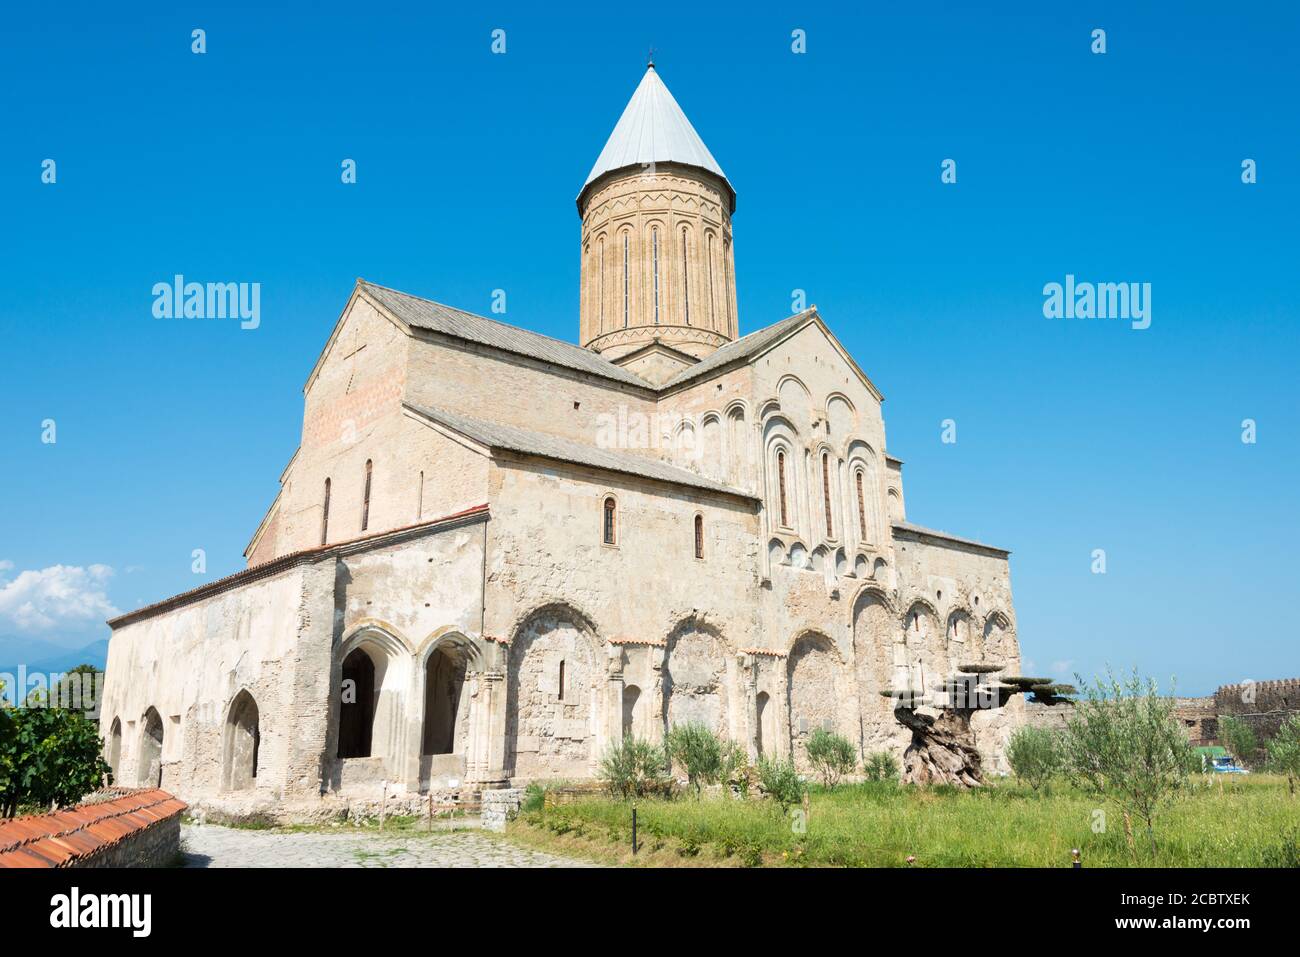 Telavi, Georgia - Alaverdi Monastery. a famous Historic site in Telavi,  Kakheti, Georgia Stock Photo - Alamy